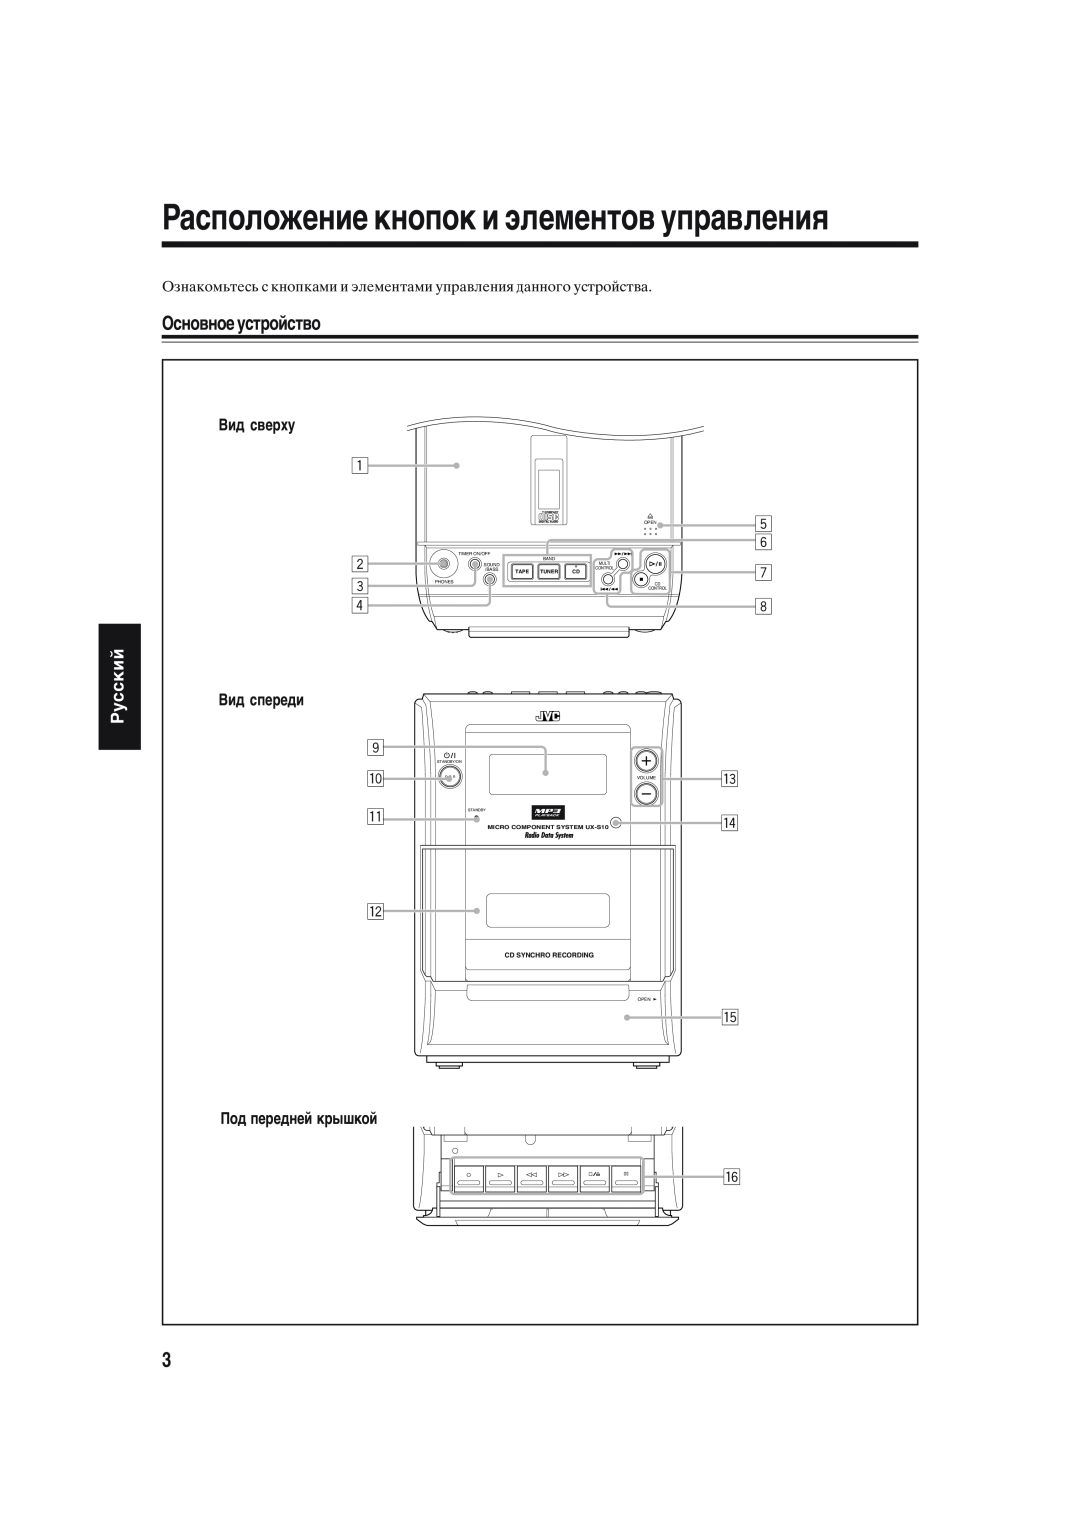 JVC UX-S10 manual Расположение кнопок и элементов управления, Основное устройство, Pyccкий 